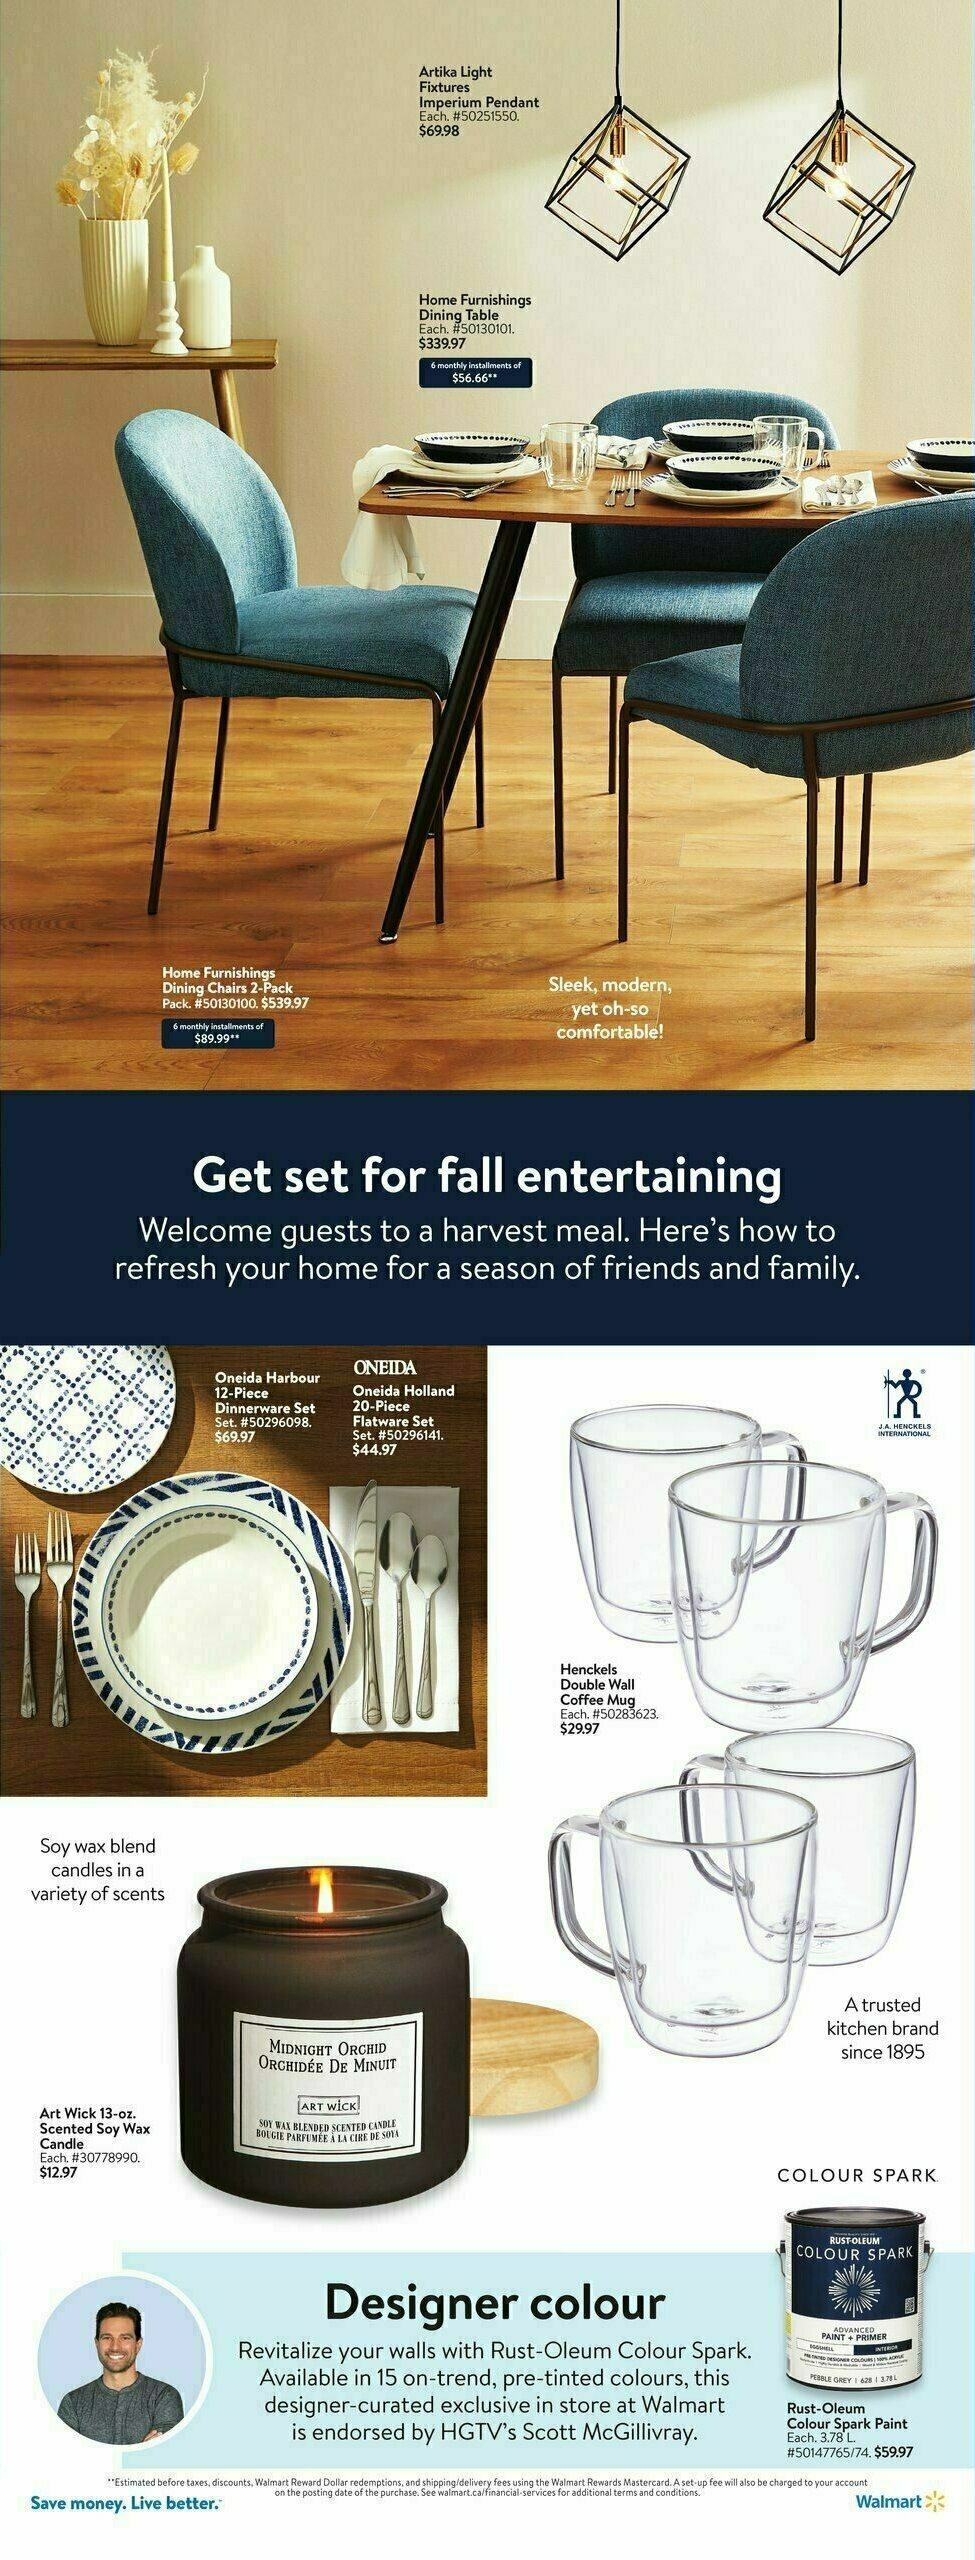 Walmart Spotlight Flyer from October 26